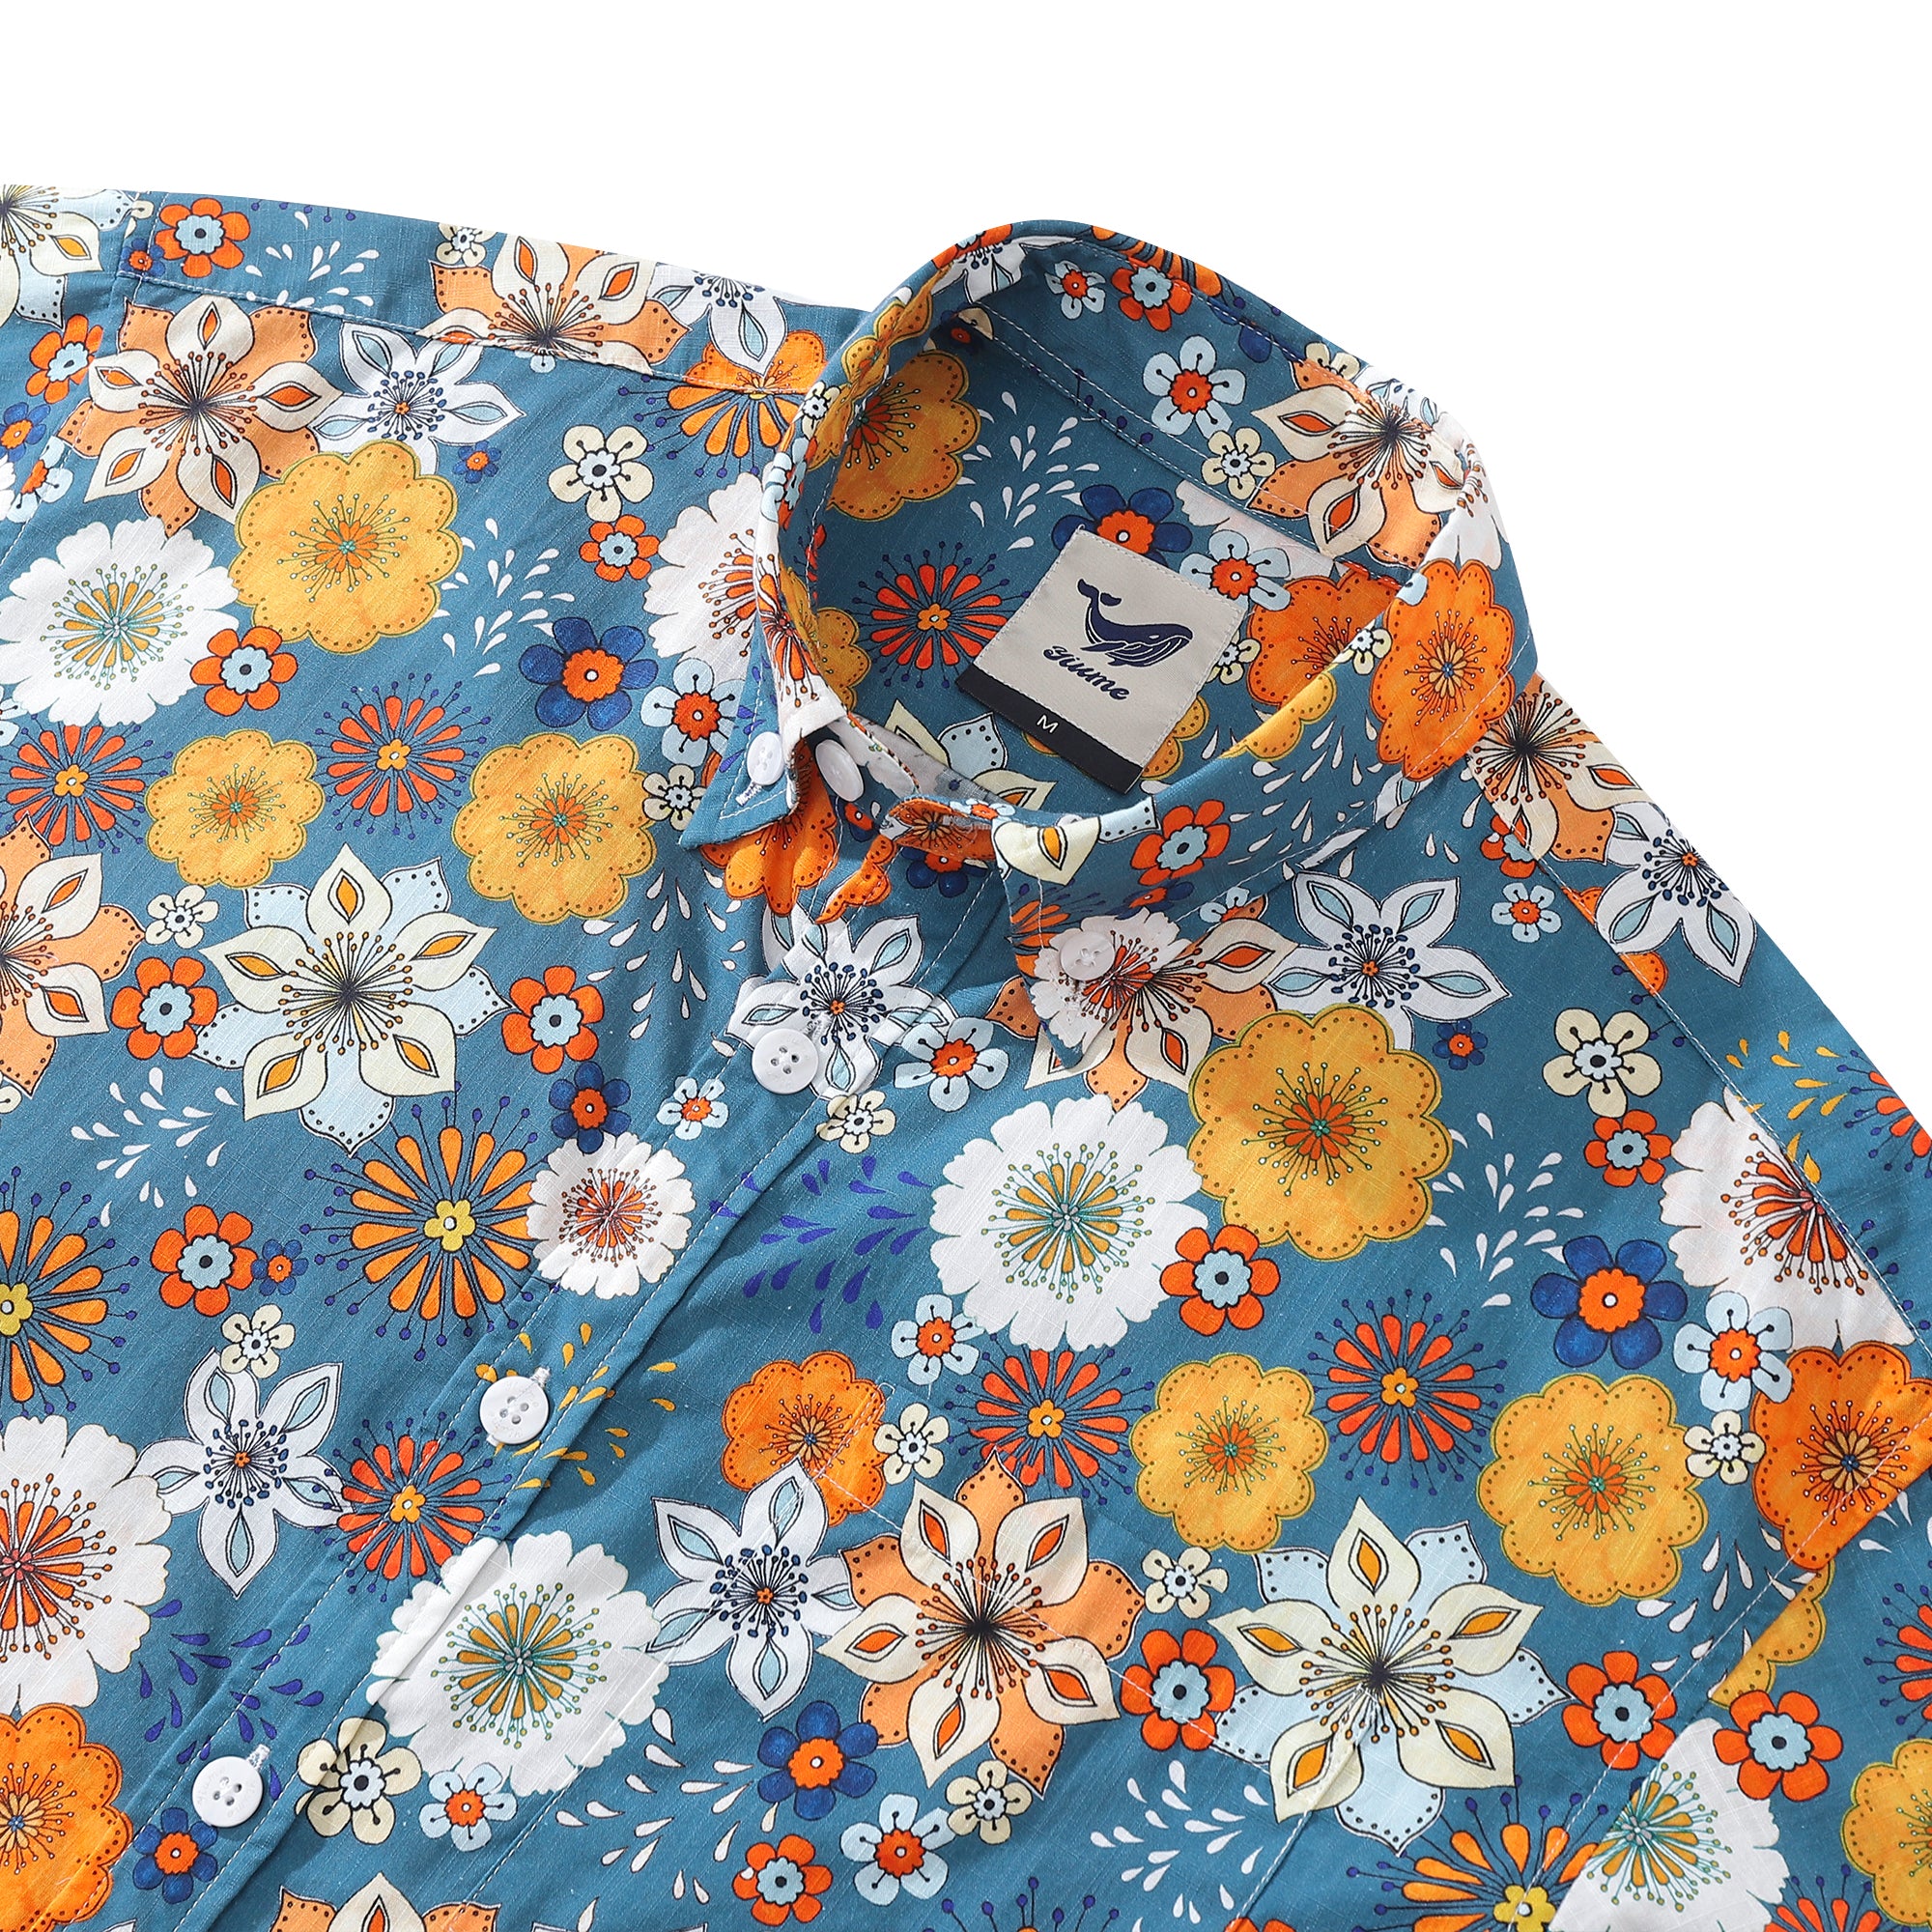 Camisa hawaiana para hombre con estampado floral de los años 60 de Samantha O' Malley Camisa Aloha de manga corta con botones de algodón